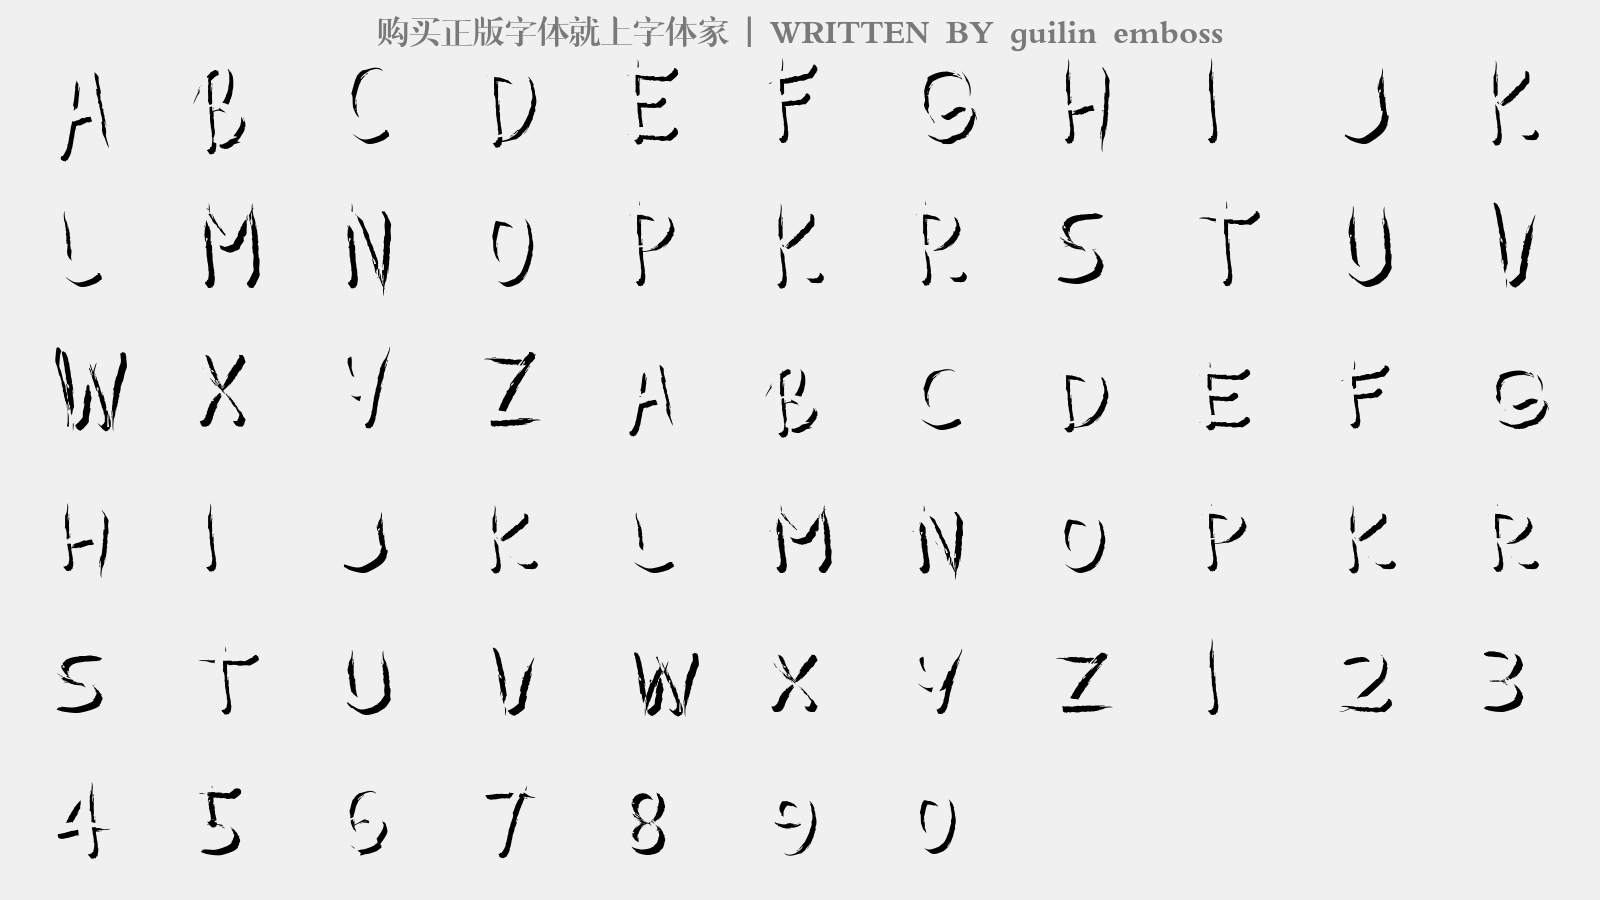 guilin emboss - 大写字母/小写字母/数字